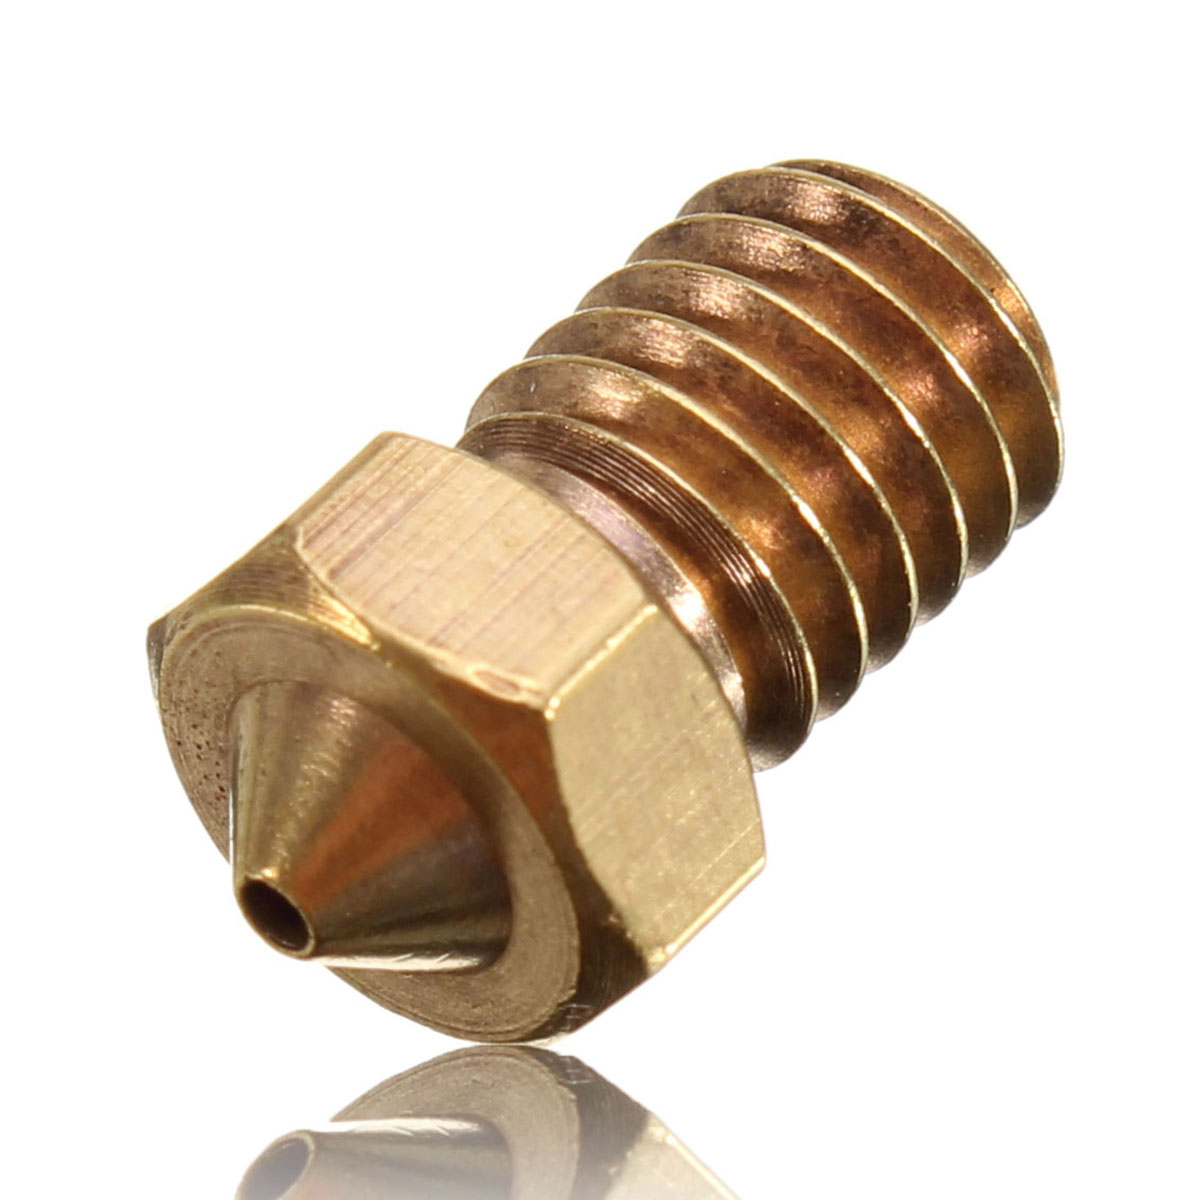 

3PCS V6 Brass Nozzle 1MM For 1.75mm Filament Copper Nozzle Extruder Print Head 3D Printer